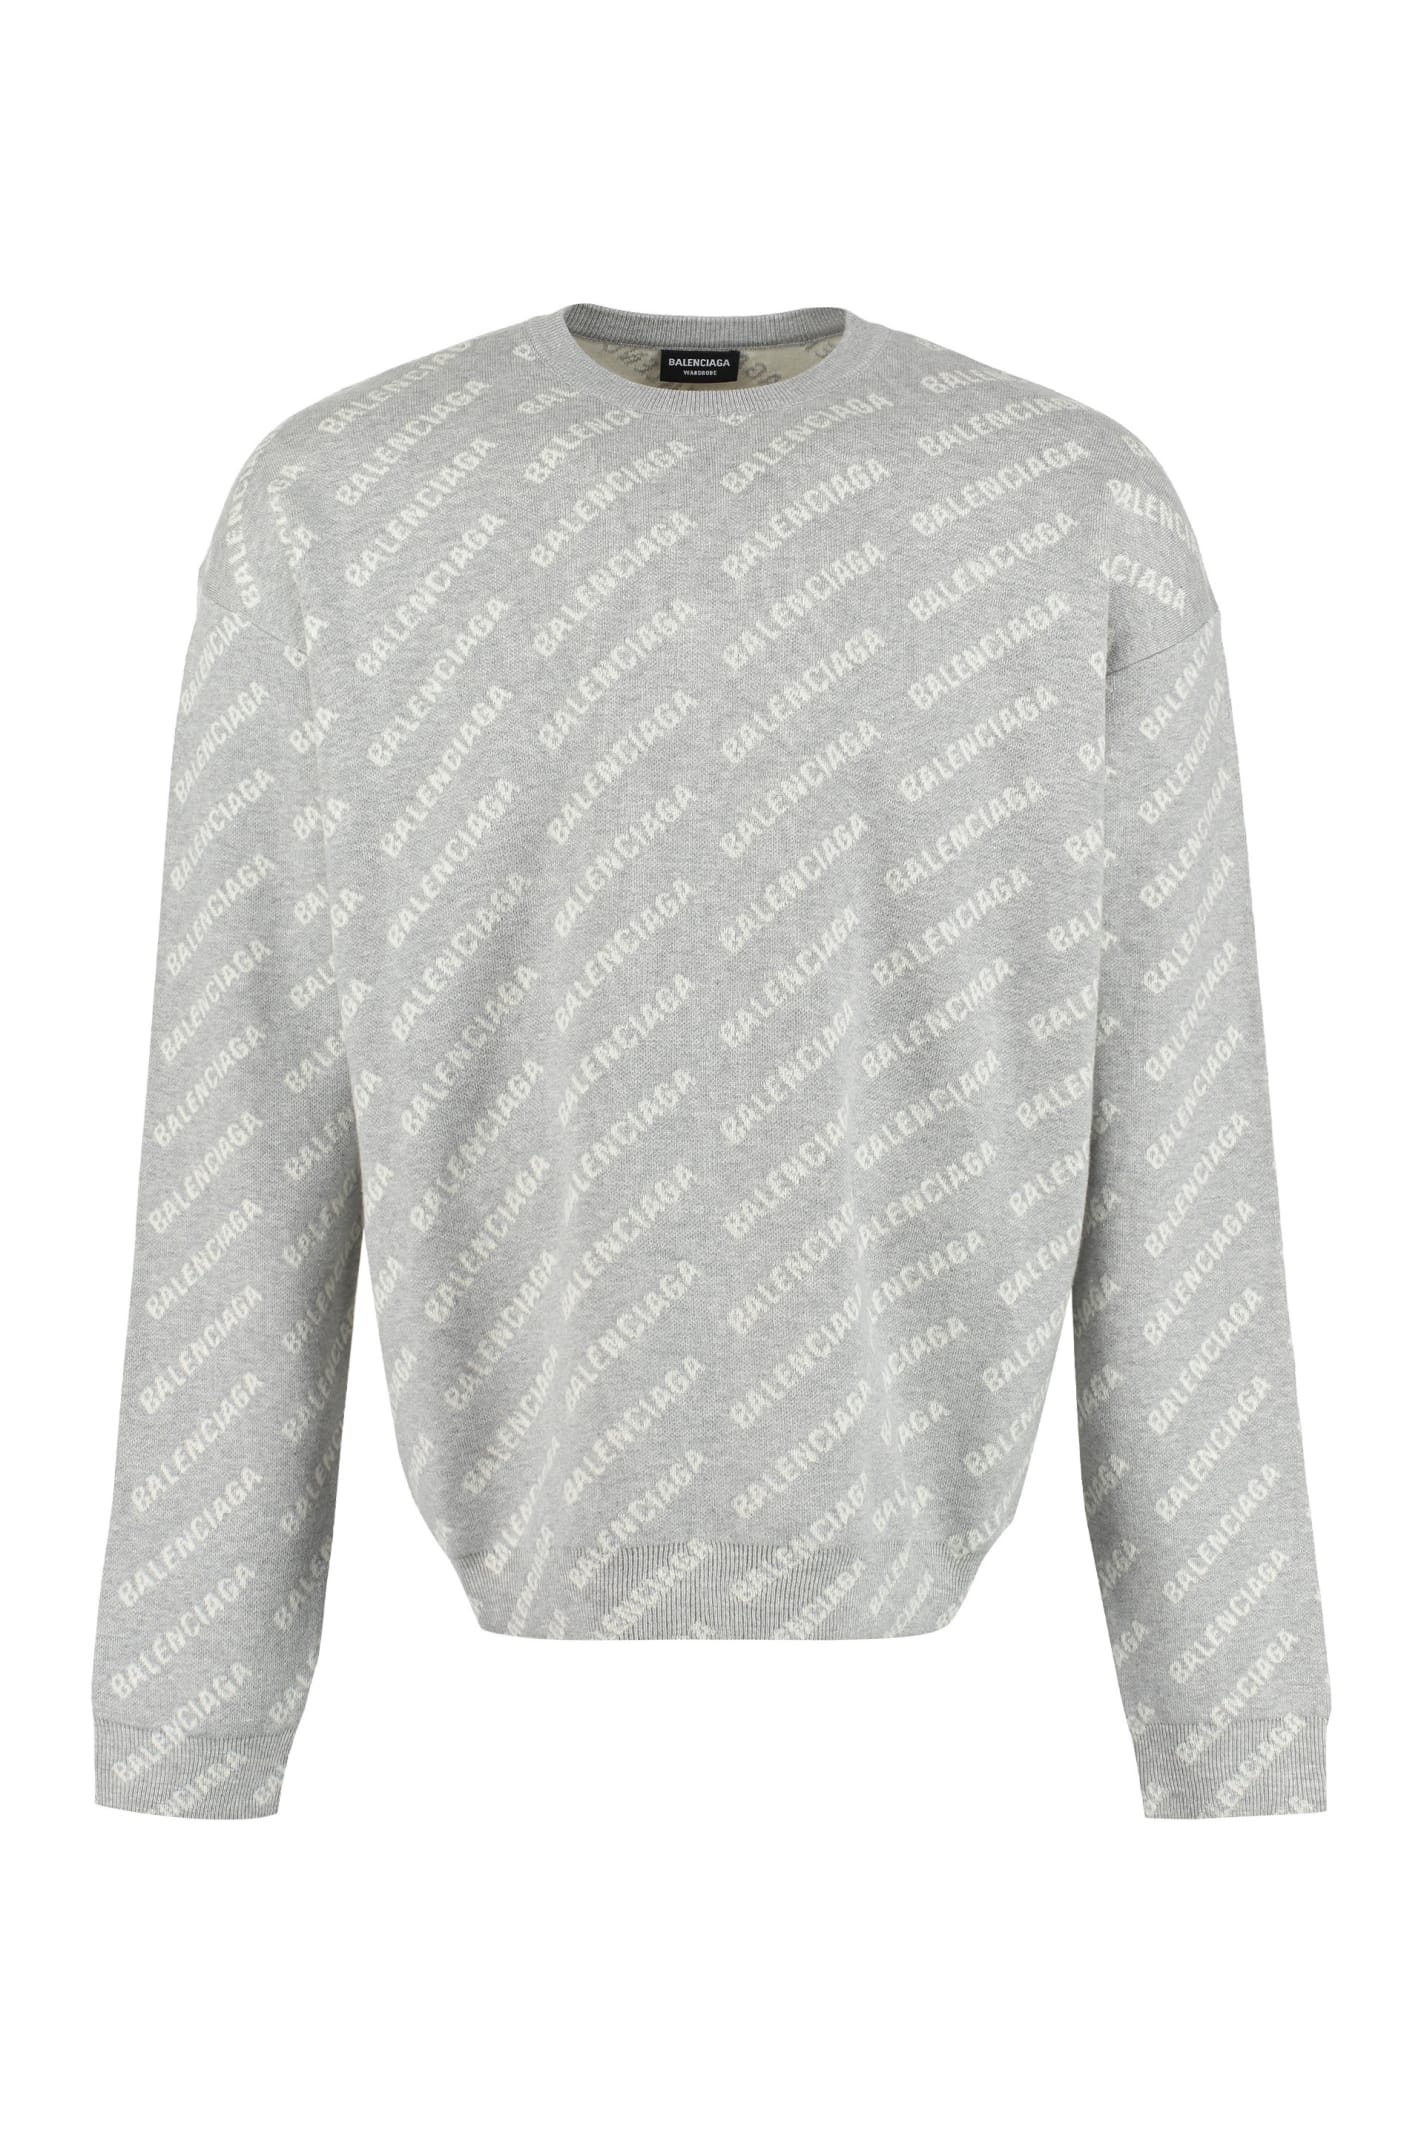 Balenciaga All Over Logo Crew-neck Sweater